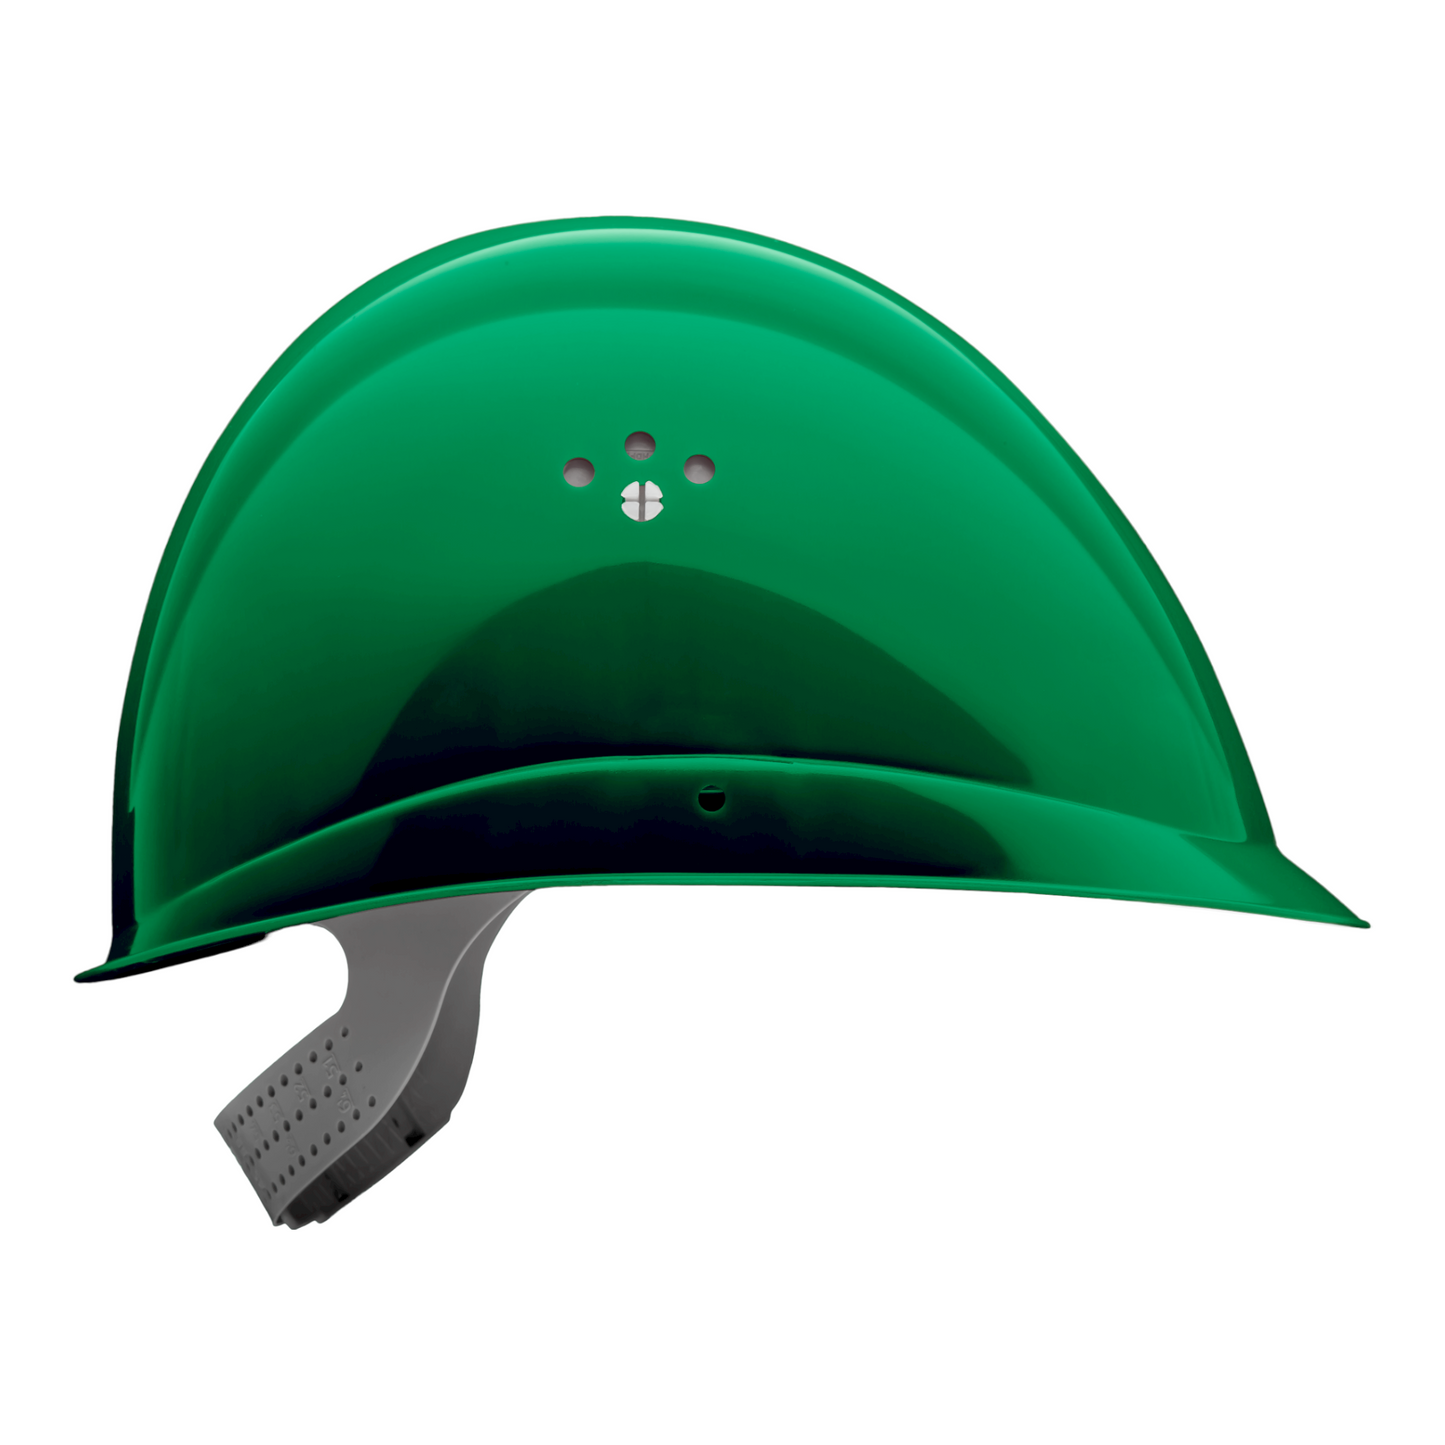 INAP-Profiler-6 helmet